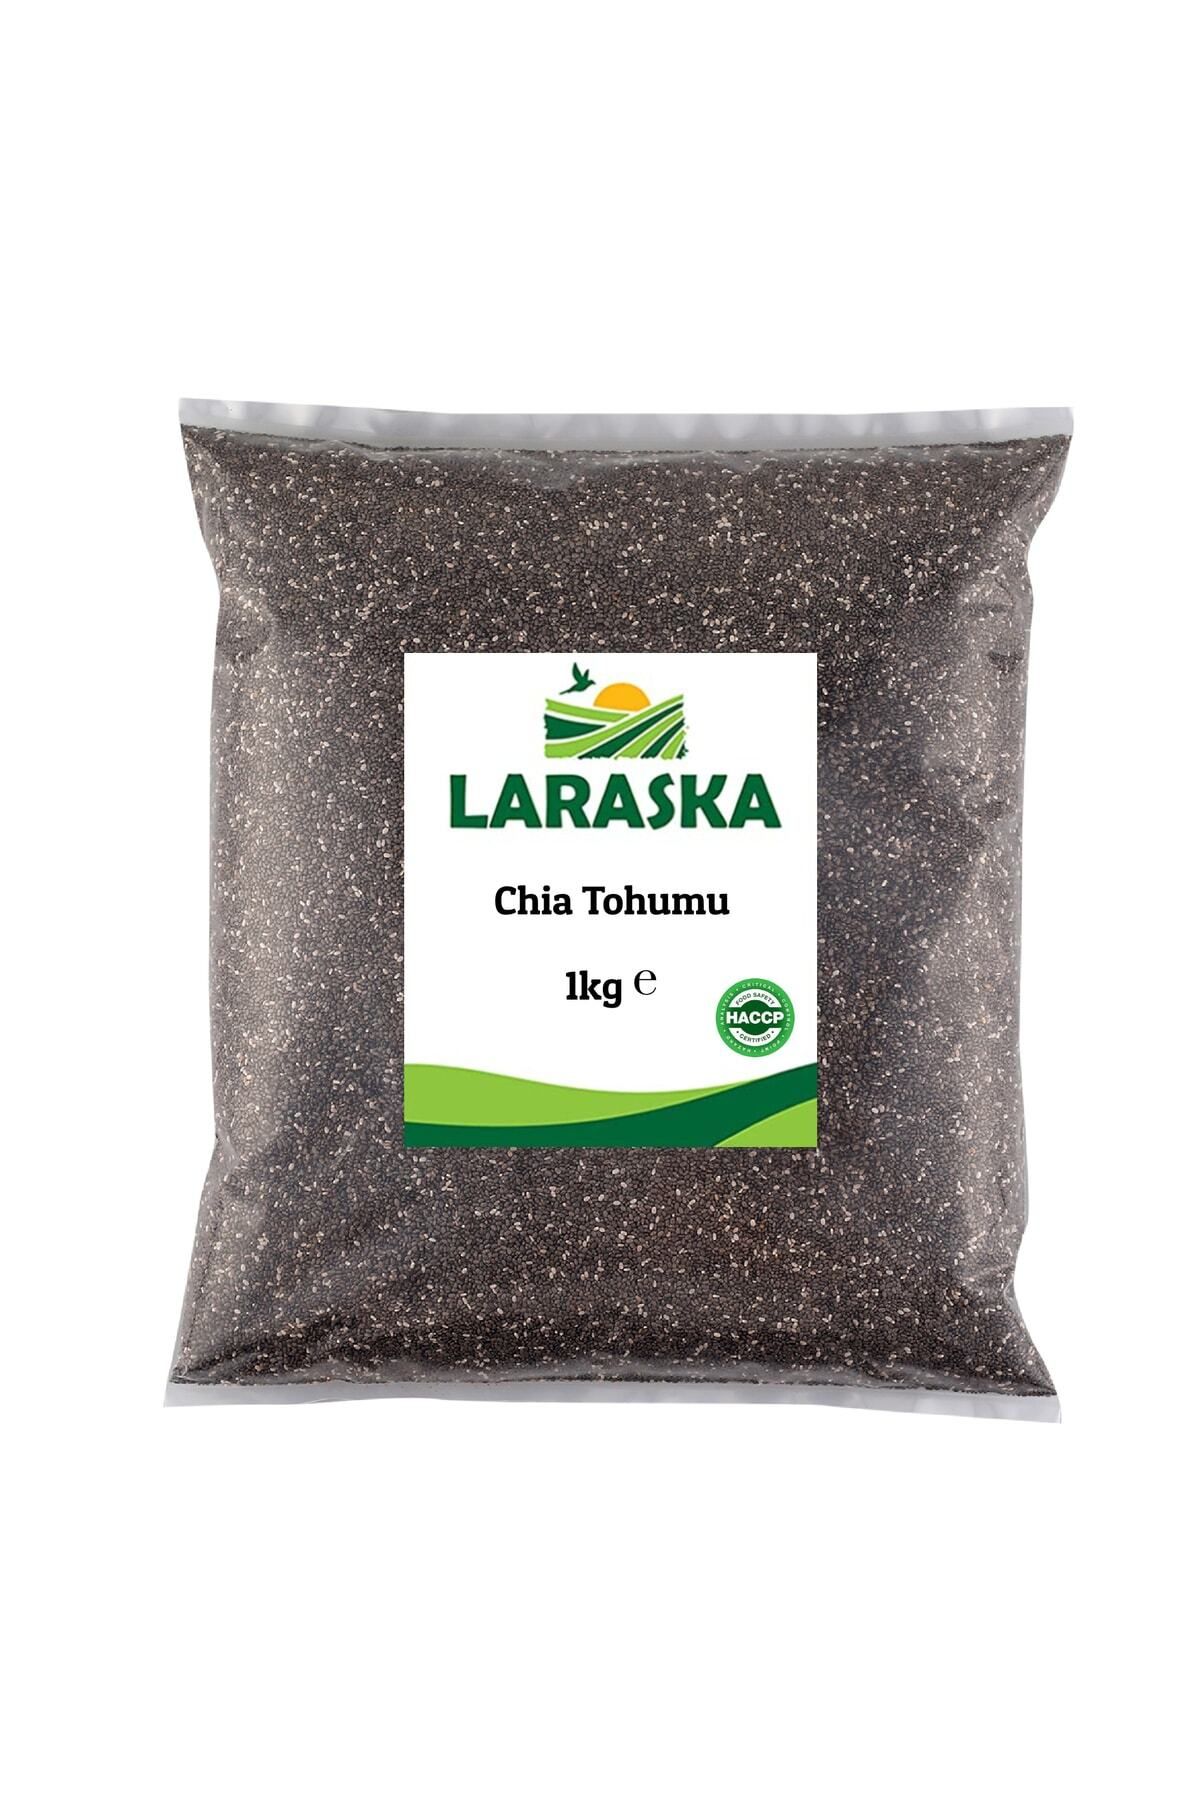 Laraska Chia Tohumu 1kg Chia Seeds 1kg-çiya Tohuımu